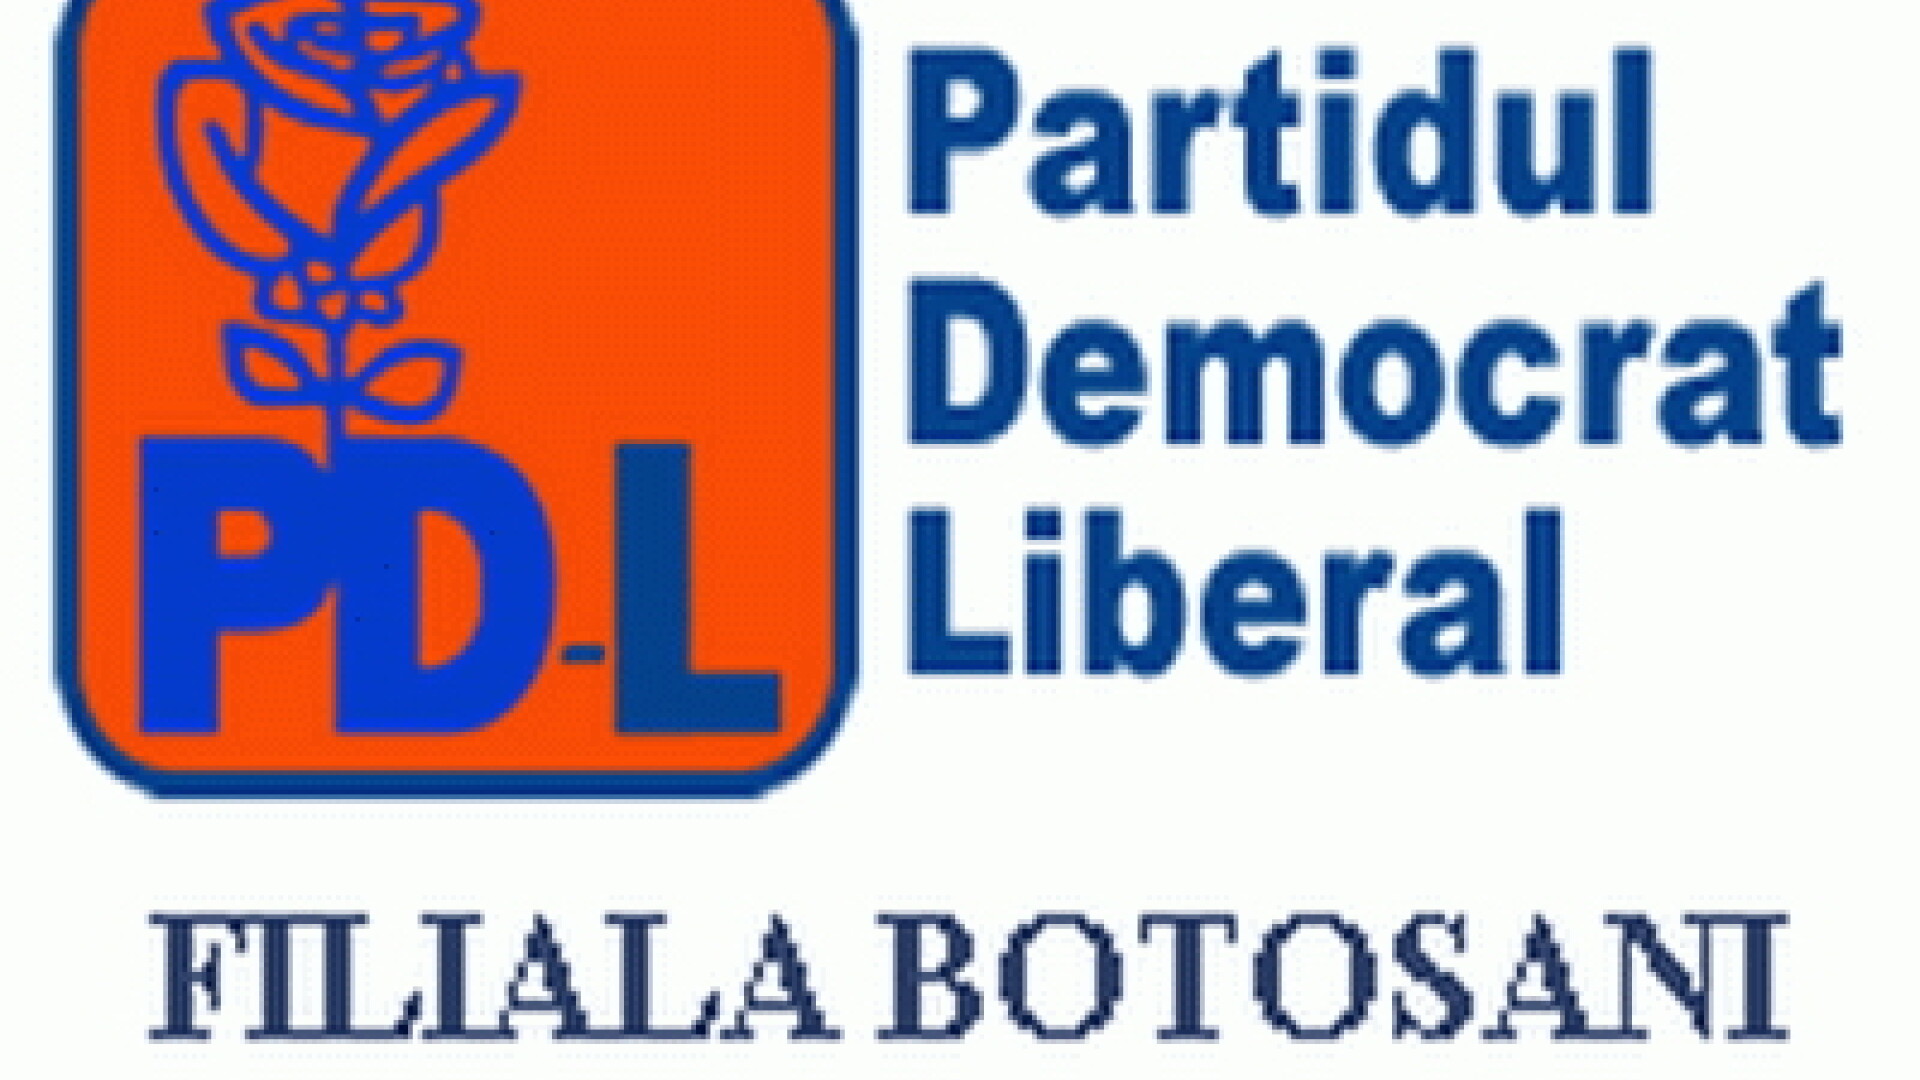 PDL Botosani